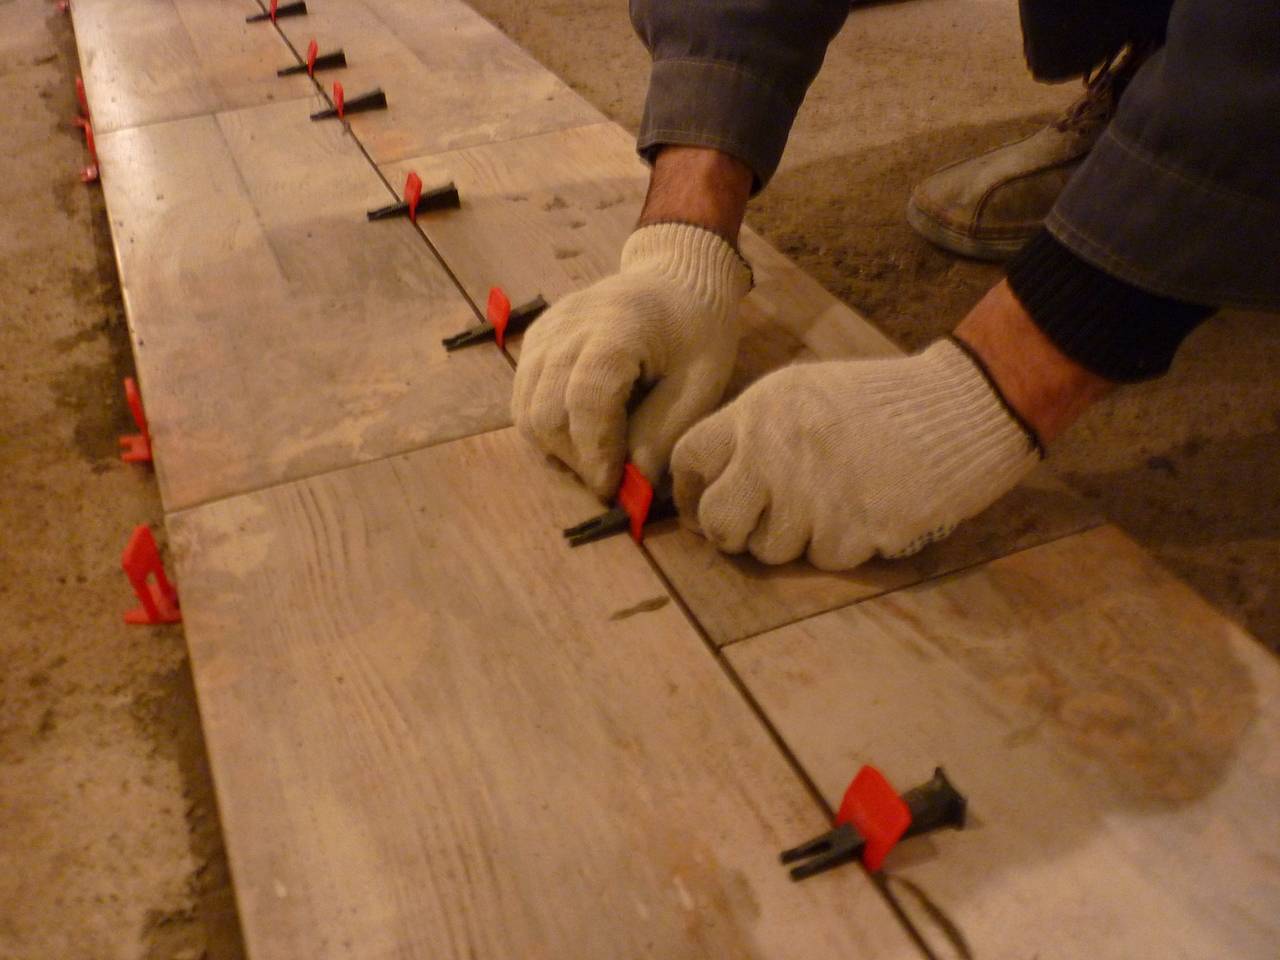 Выполнение плиточных работ: какие материалы, инструменты нужны для укладки плитки, технология процесса